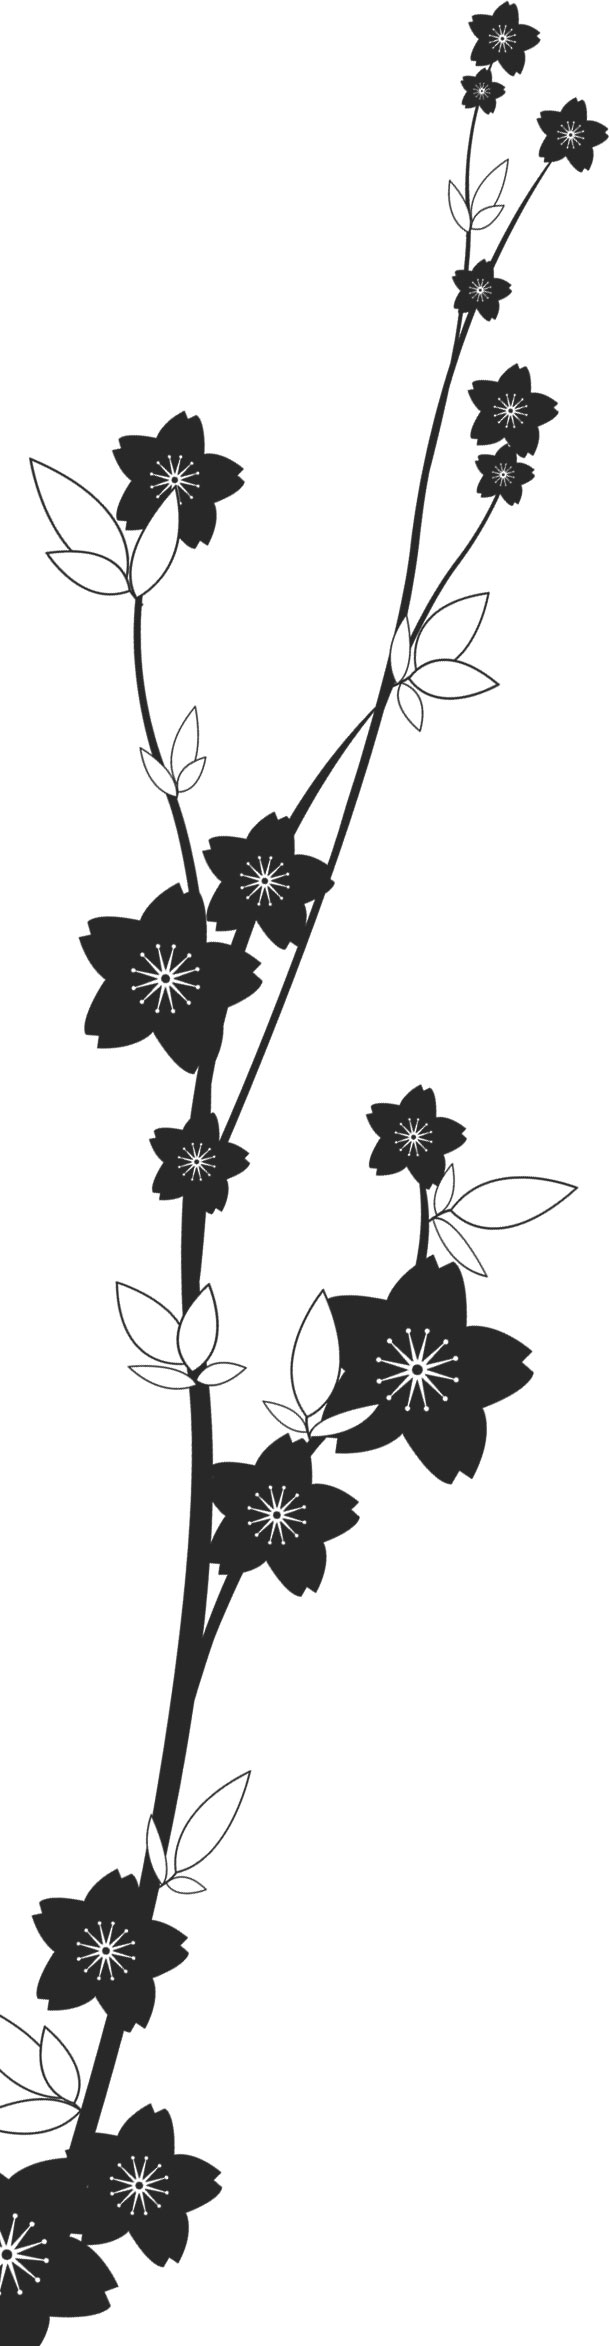 美しい花の画像 50 桜 イラスト 枠 白黒